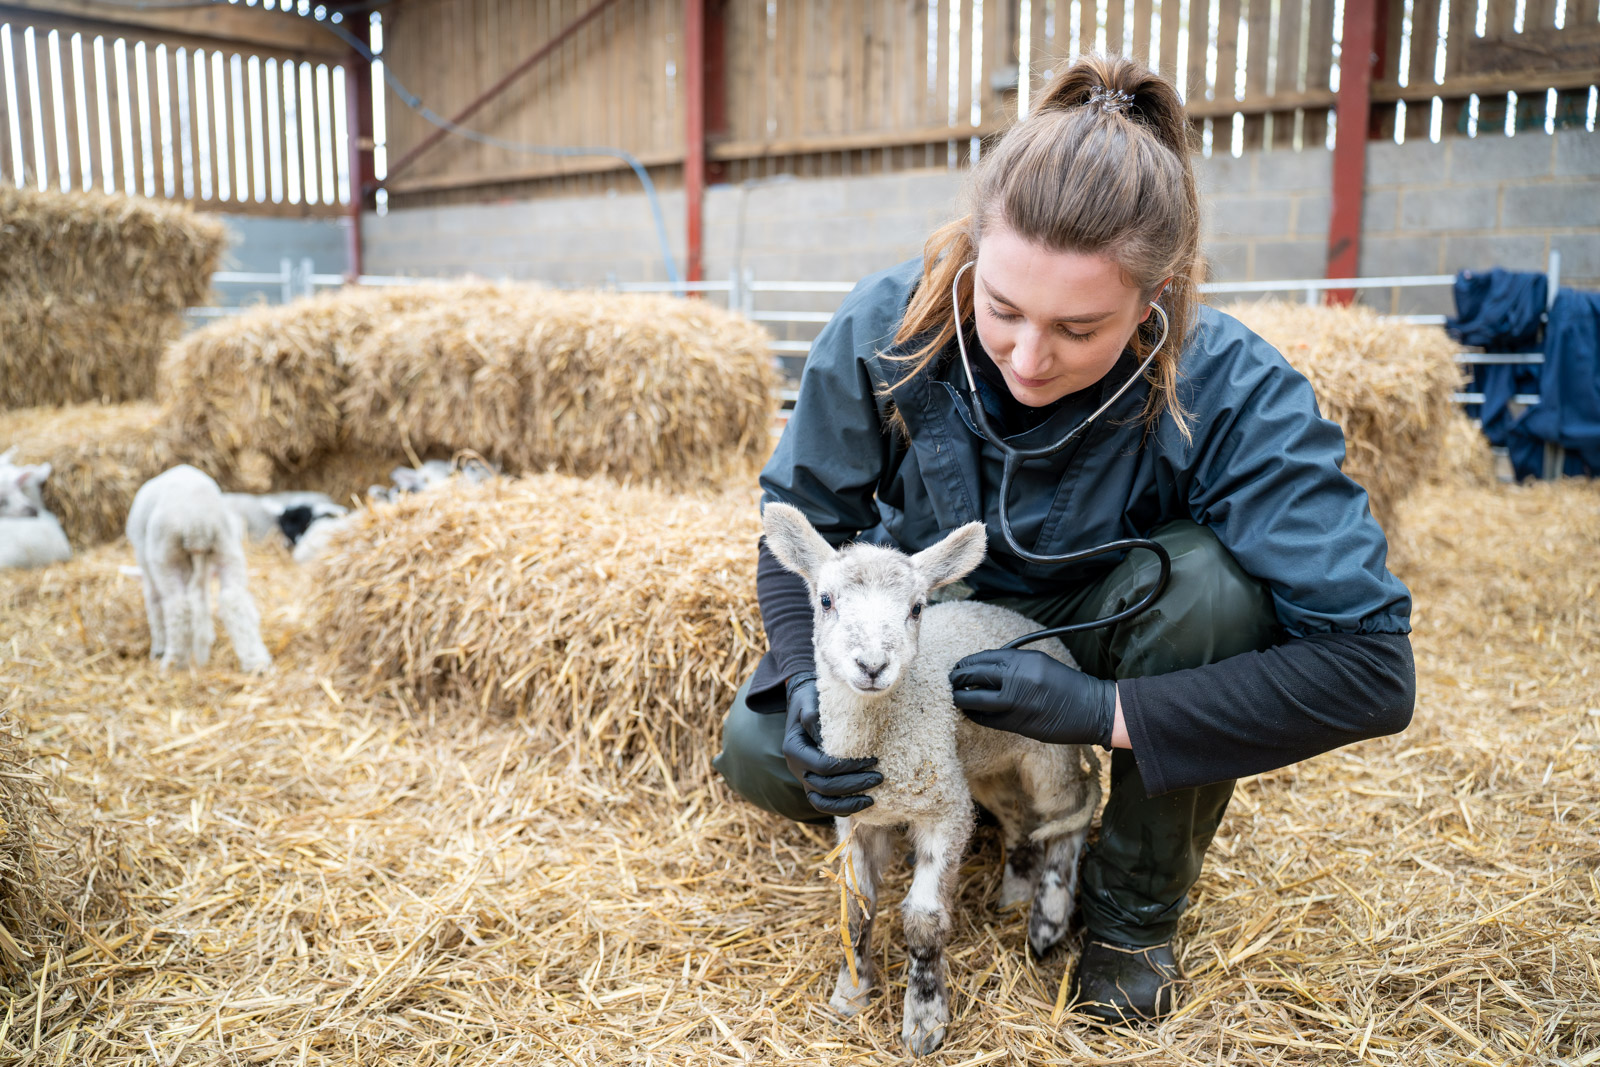 Sally checking the lamb